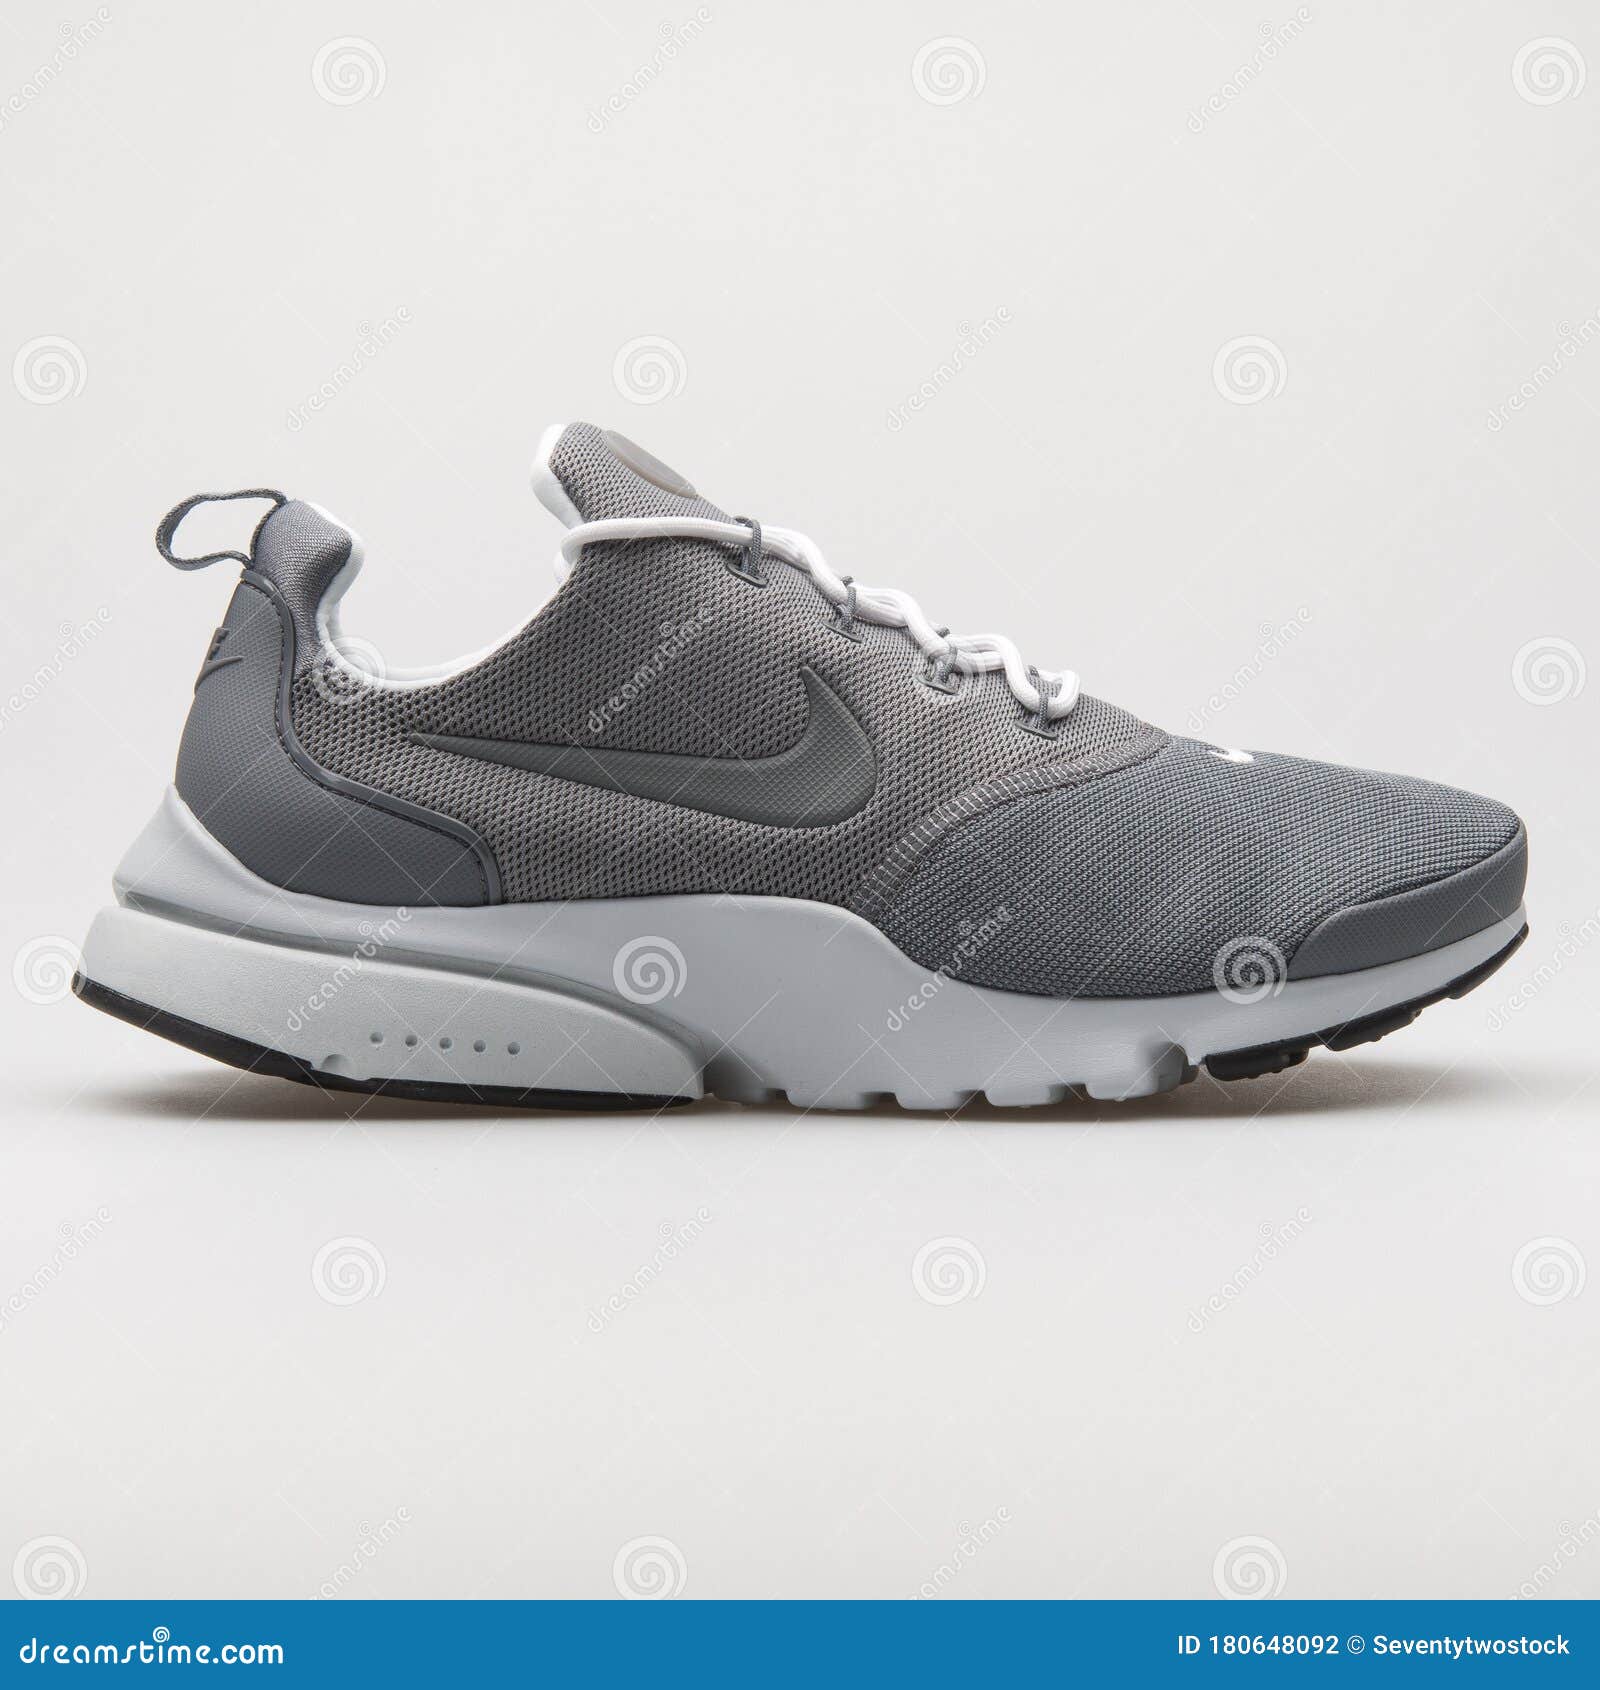 Nike Presto Fly Sneaker Gris editorial - Imagen cordones: 180648092